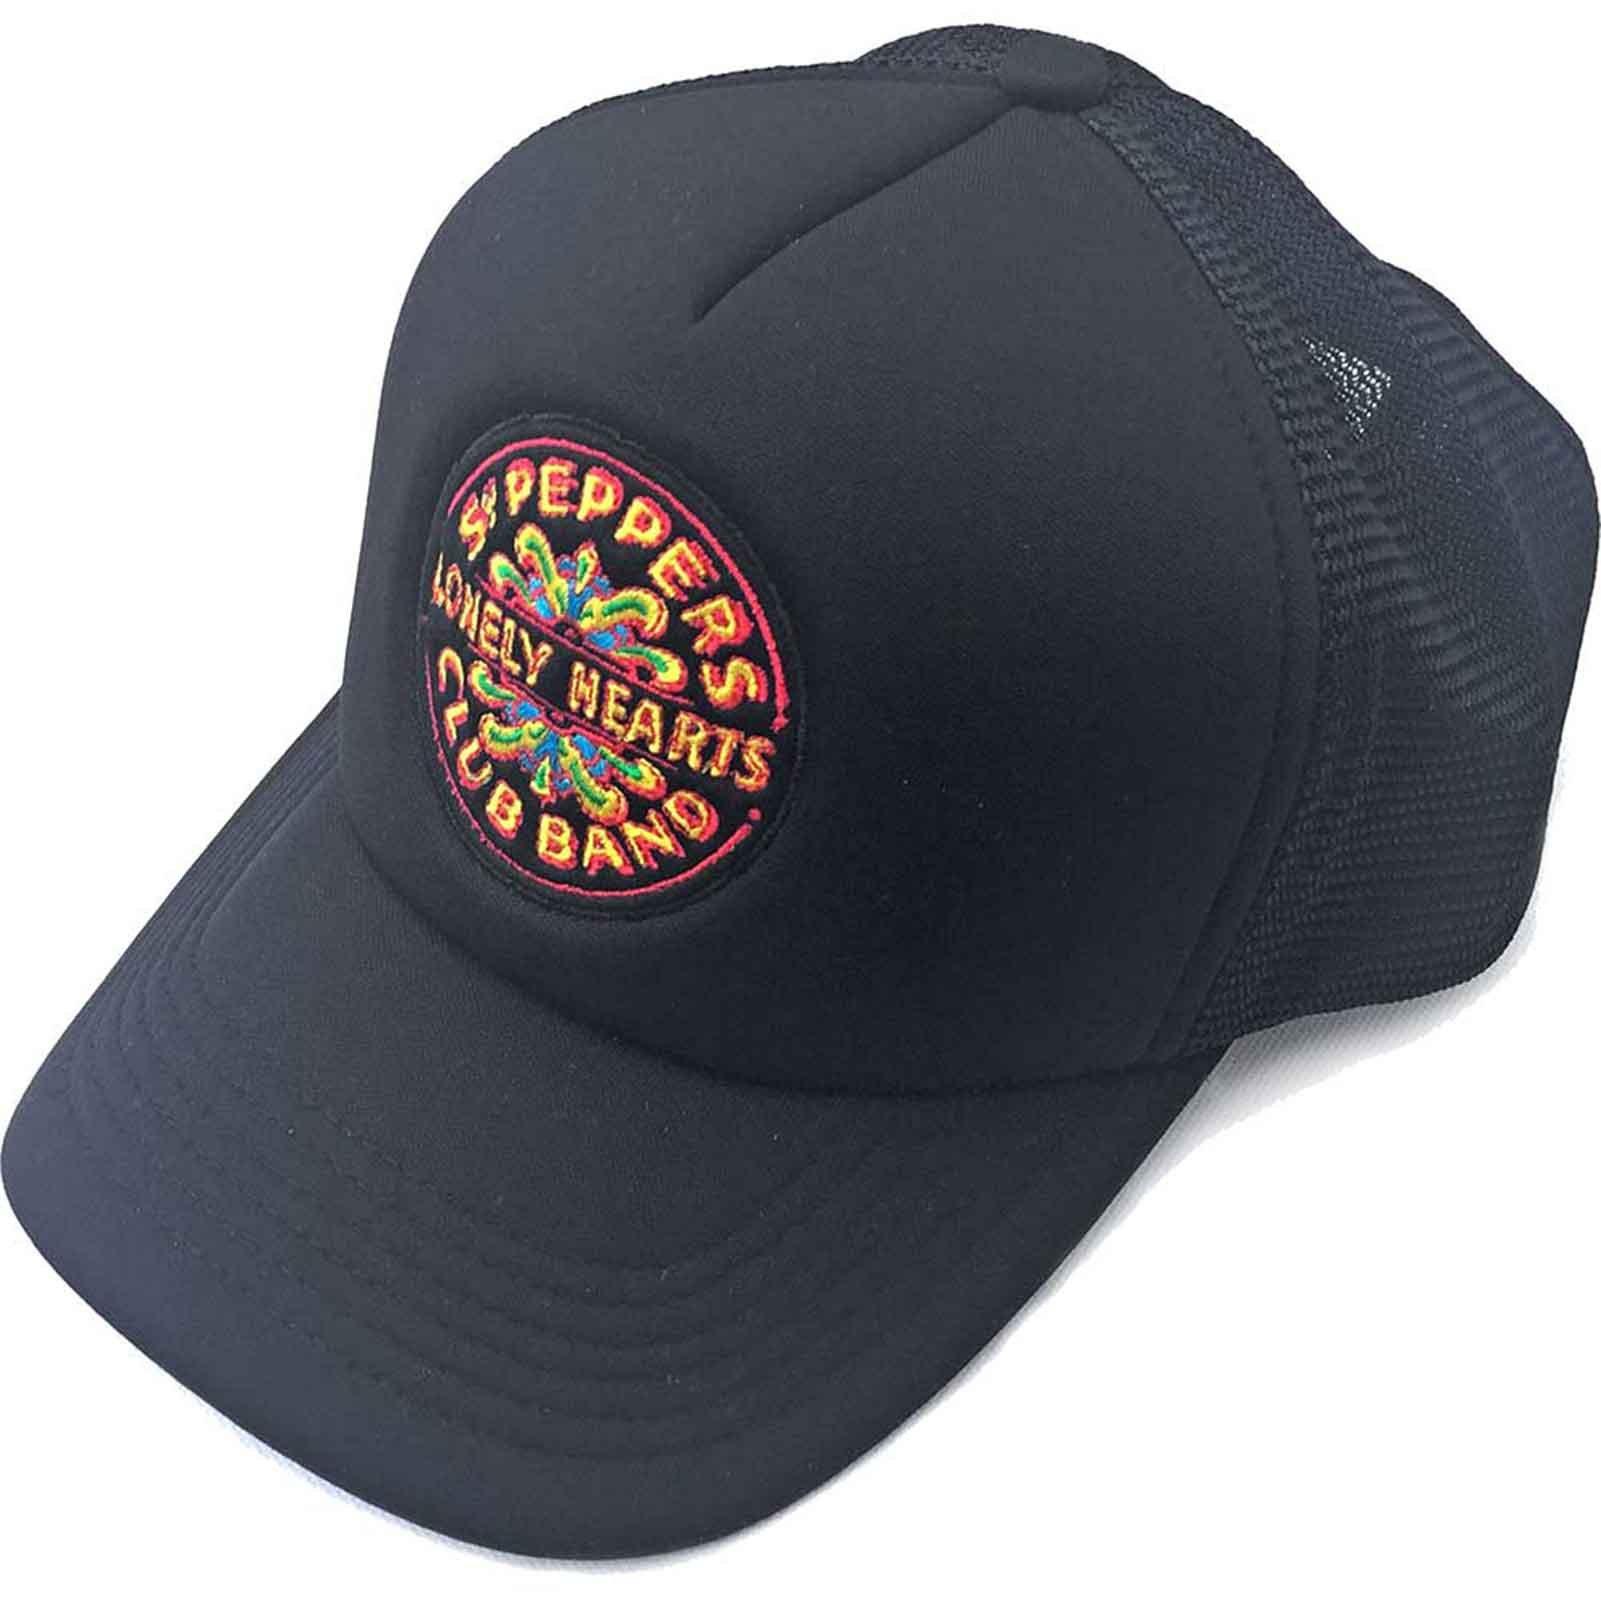 бейсбольная кепка с ремешком на спине sgt pepper drum beatles синий Бейсбольная кепка Trucker с логотипом Sgt Pepper Drum Beatles, черный